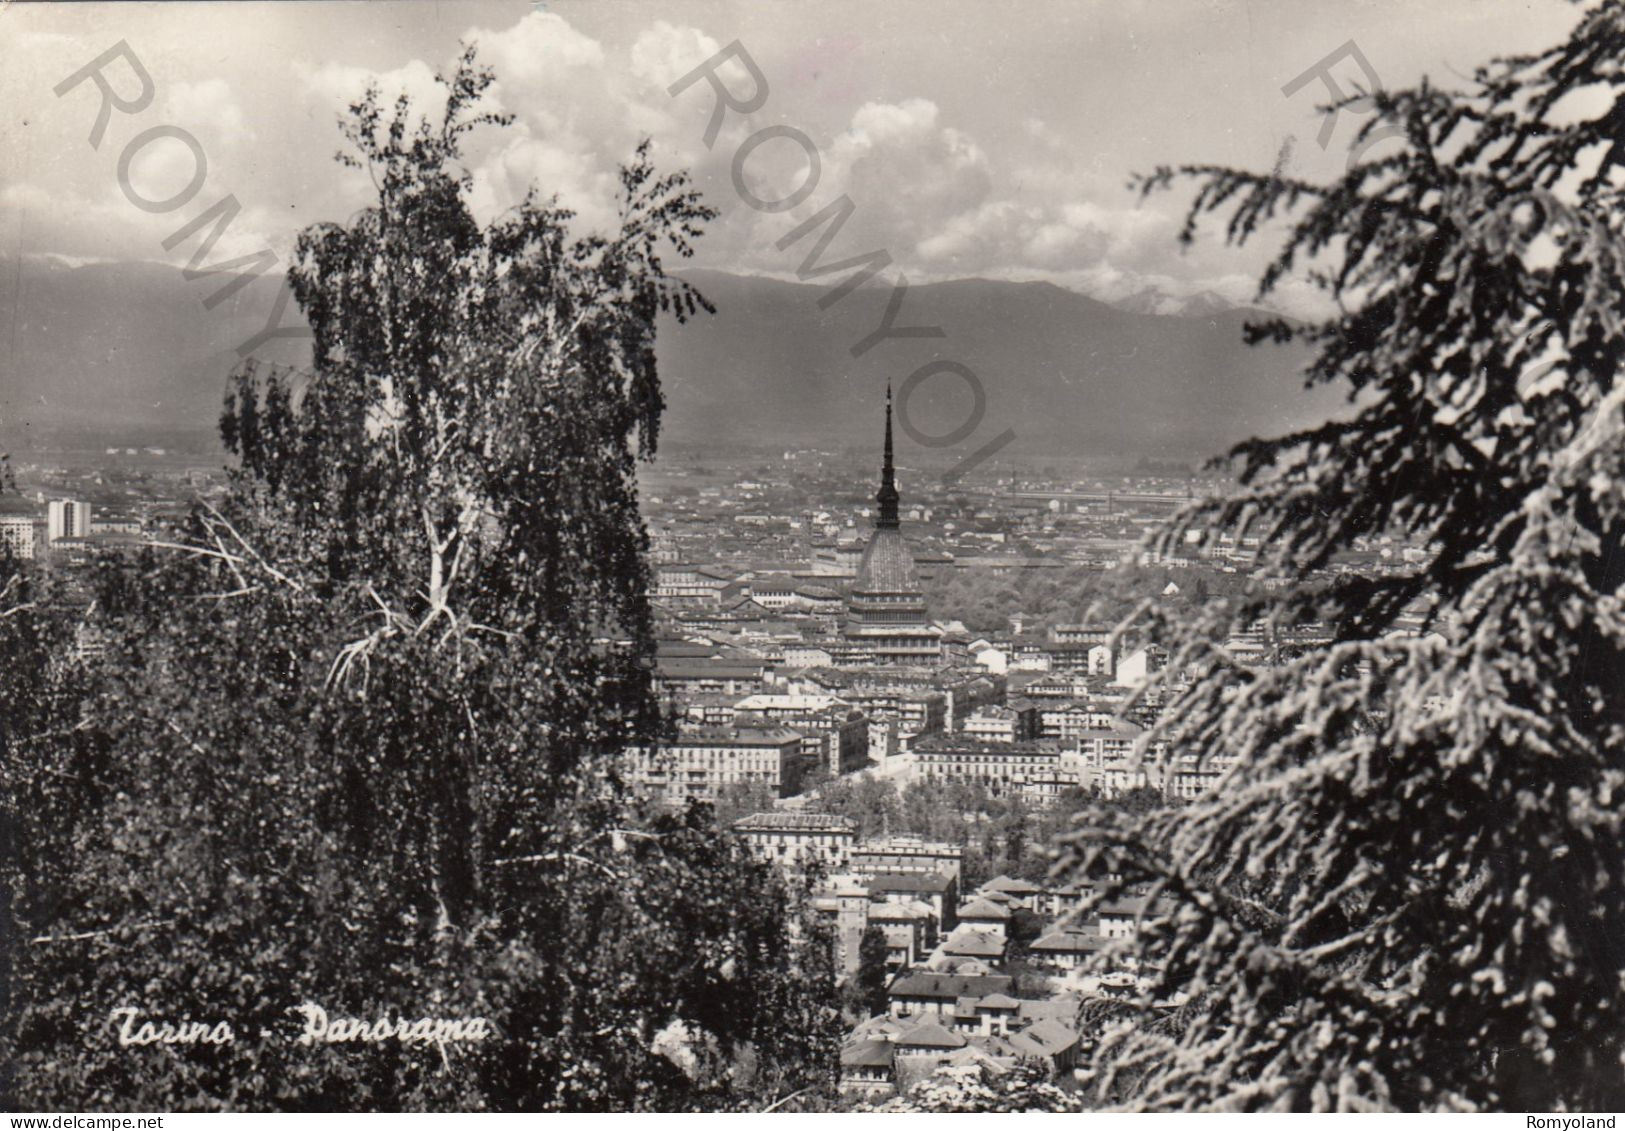 CARTOLINA  B7 TORINO,PIEMONTE-PANORAMA-STORIA,MEMORIA,CULTURA,RELIGIONE,IMPERO ROMANO,BELLA ITALIA,VIAGGIATA 1960 - Viste Panoramiche, Panorama